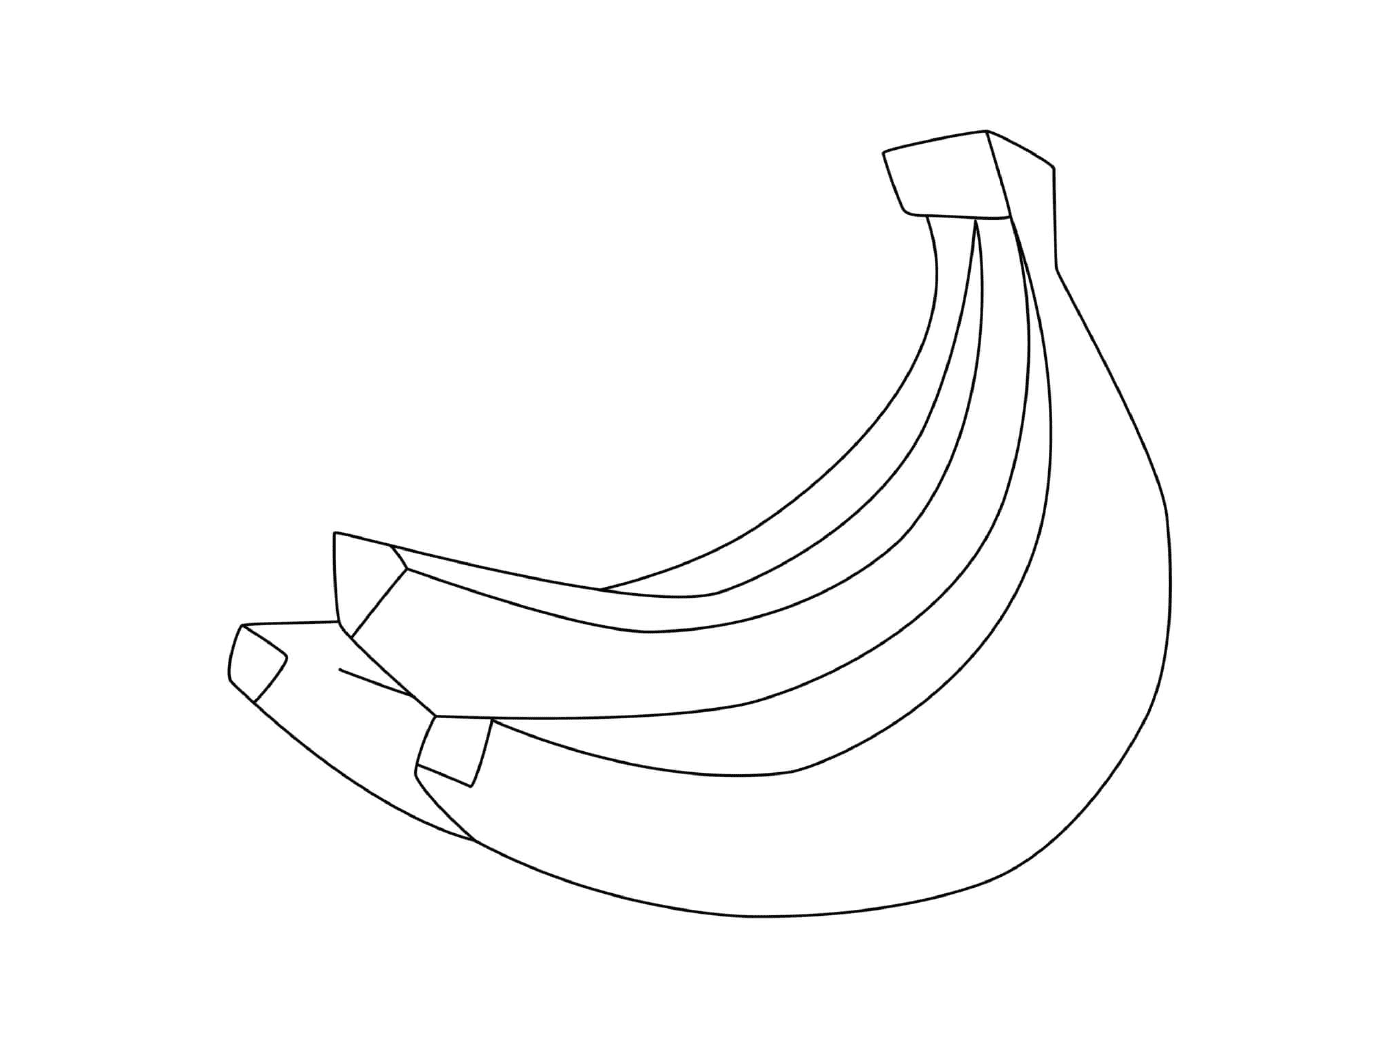  Un mucchio di banane su un tavolo 